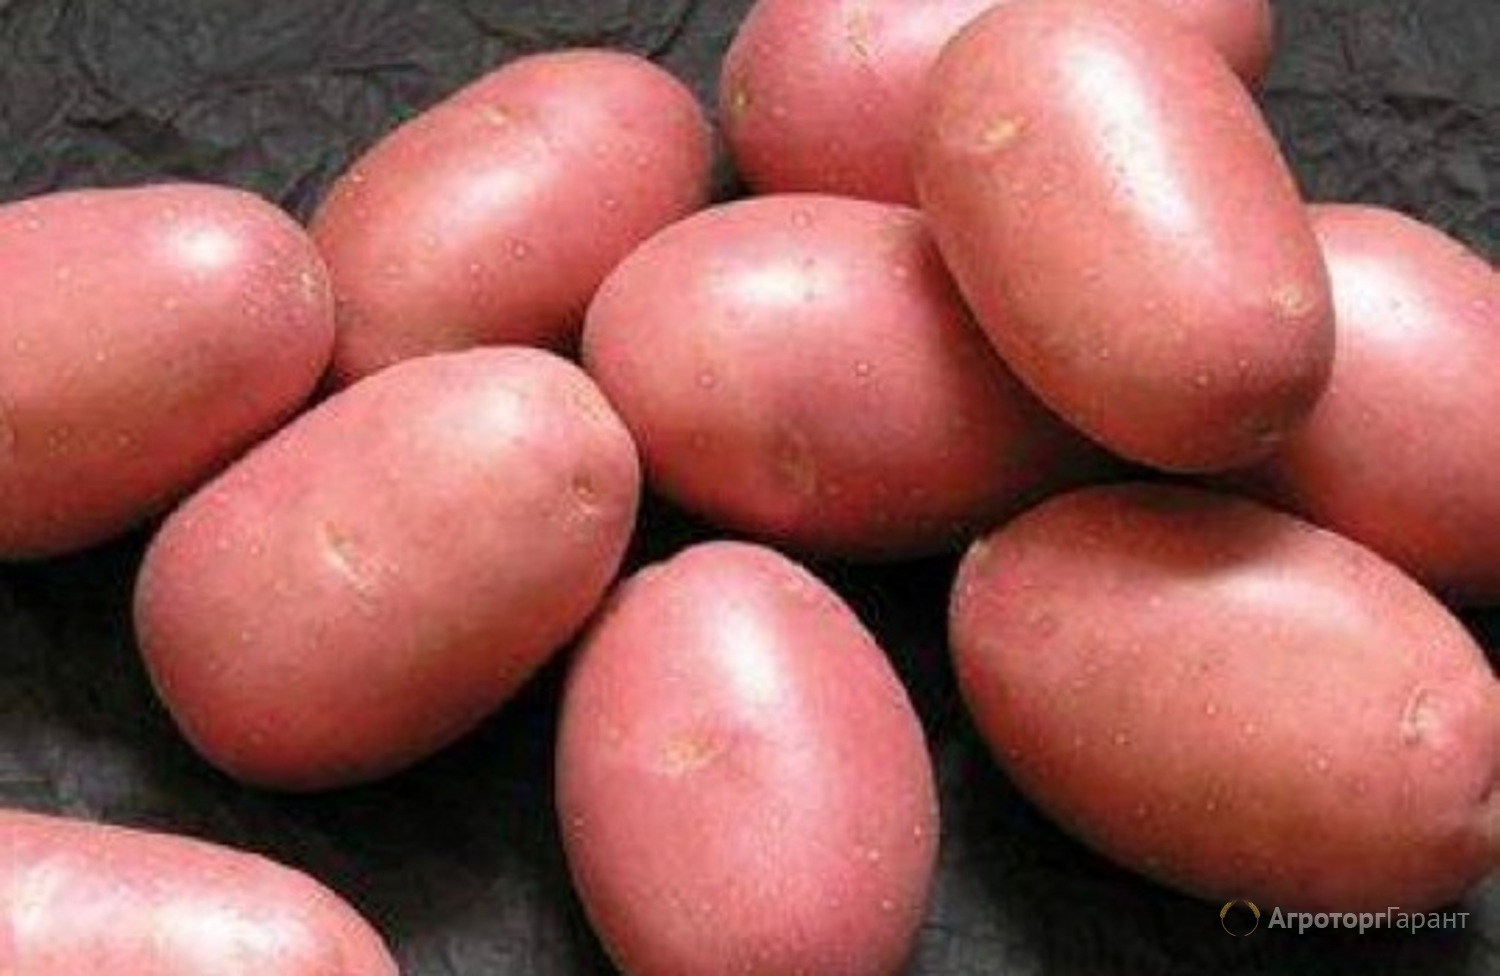 Выращивание картофеля из семян, технология посадки семенами на рассаду